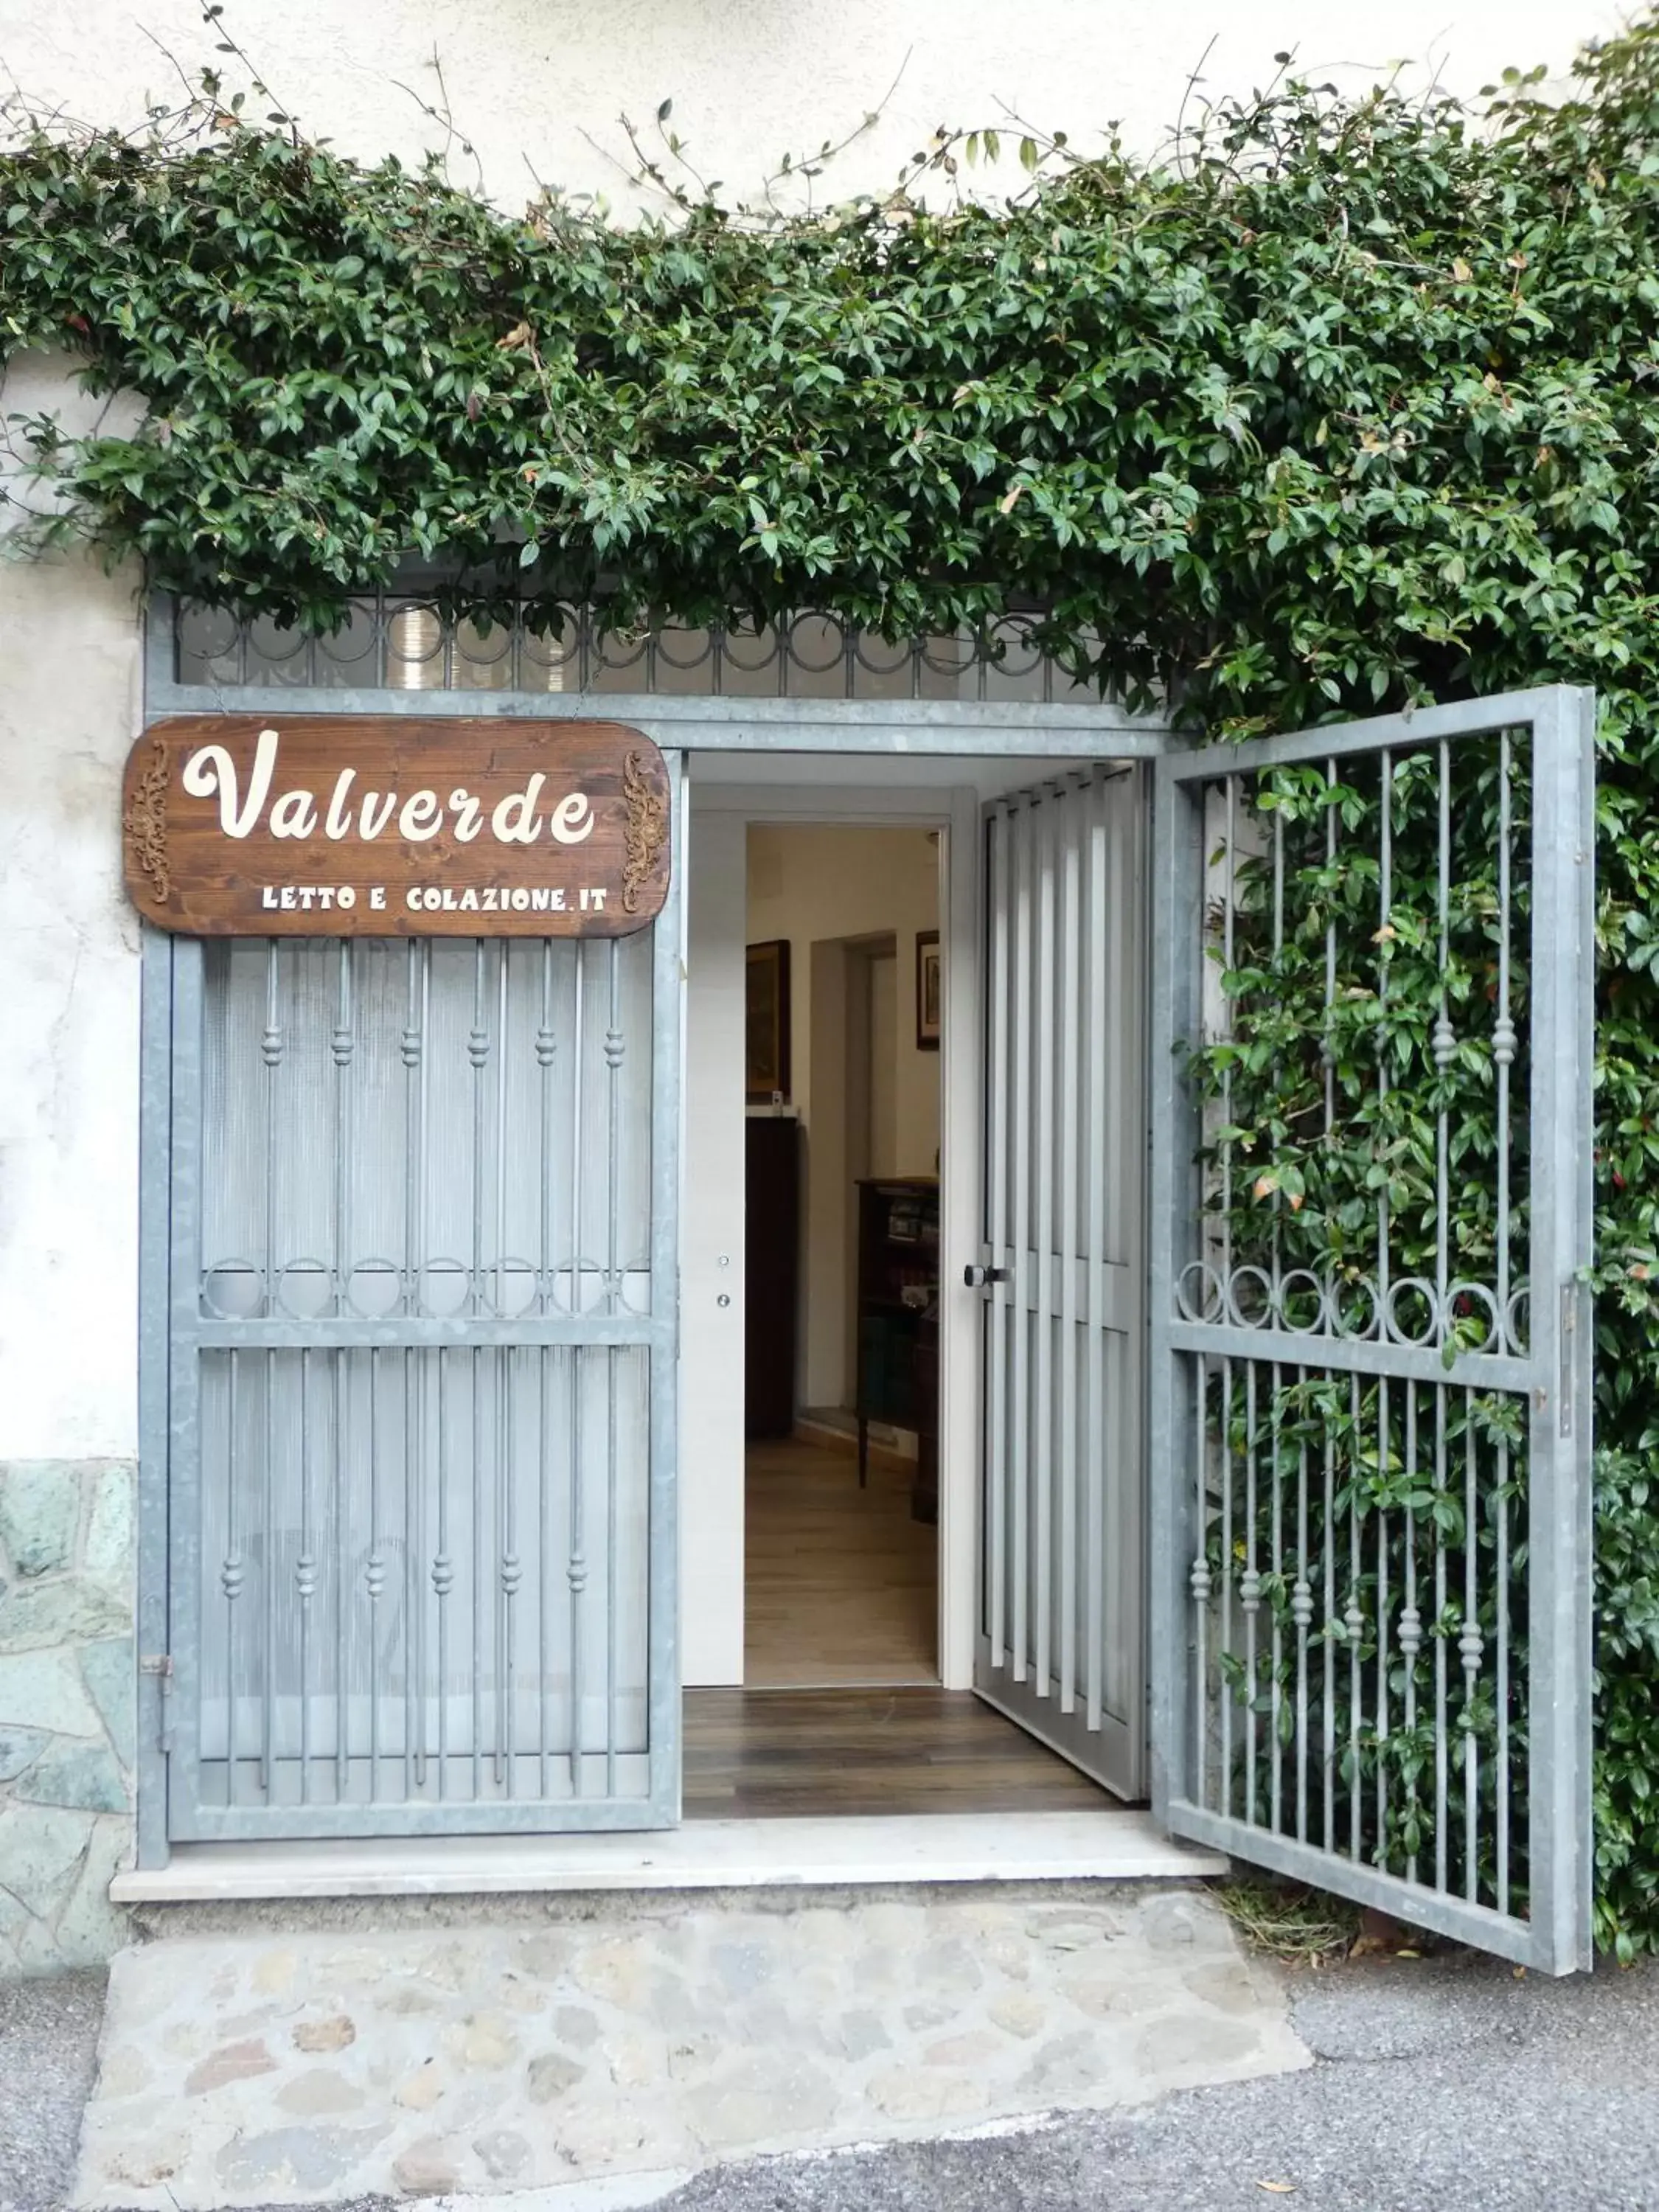 Facade/entrance in Valverde